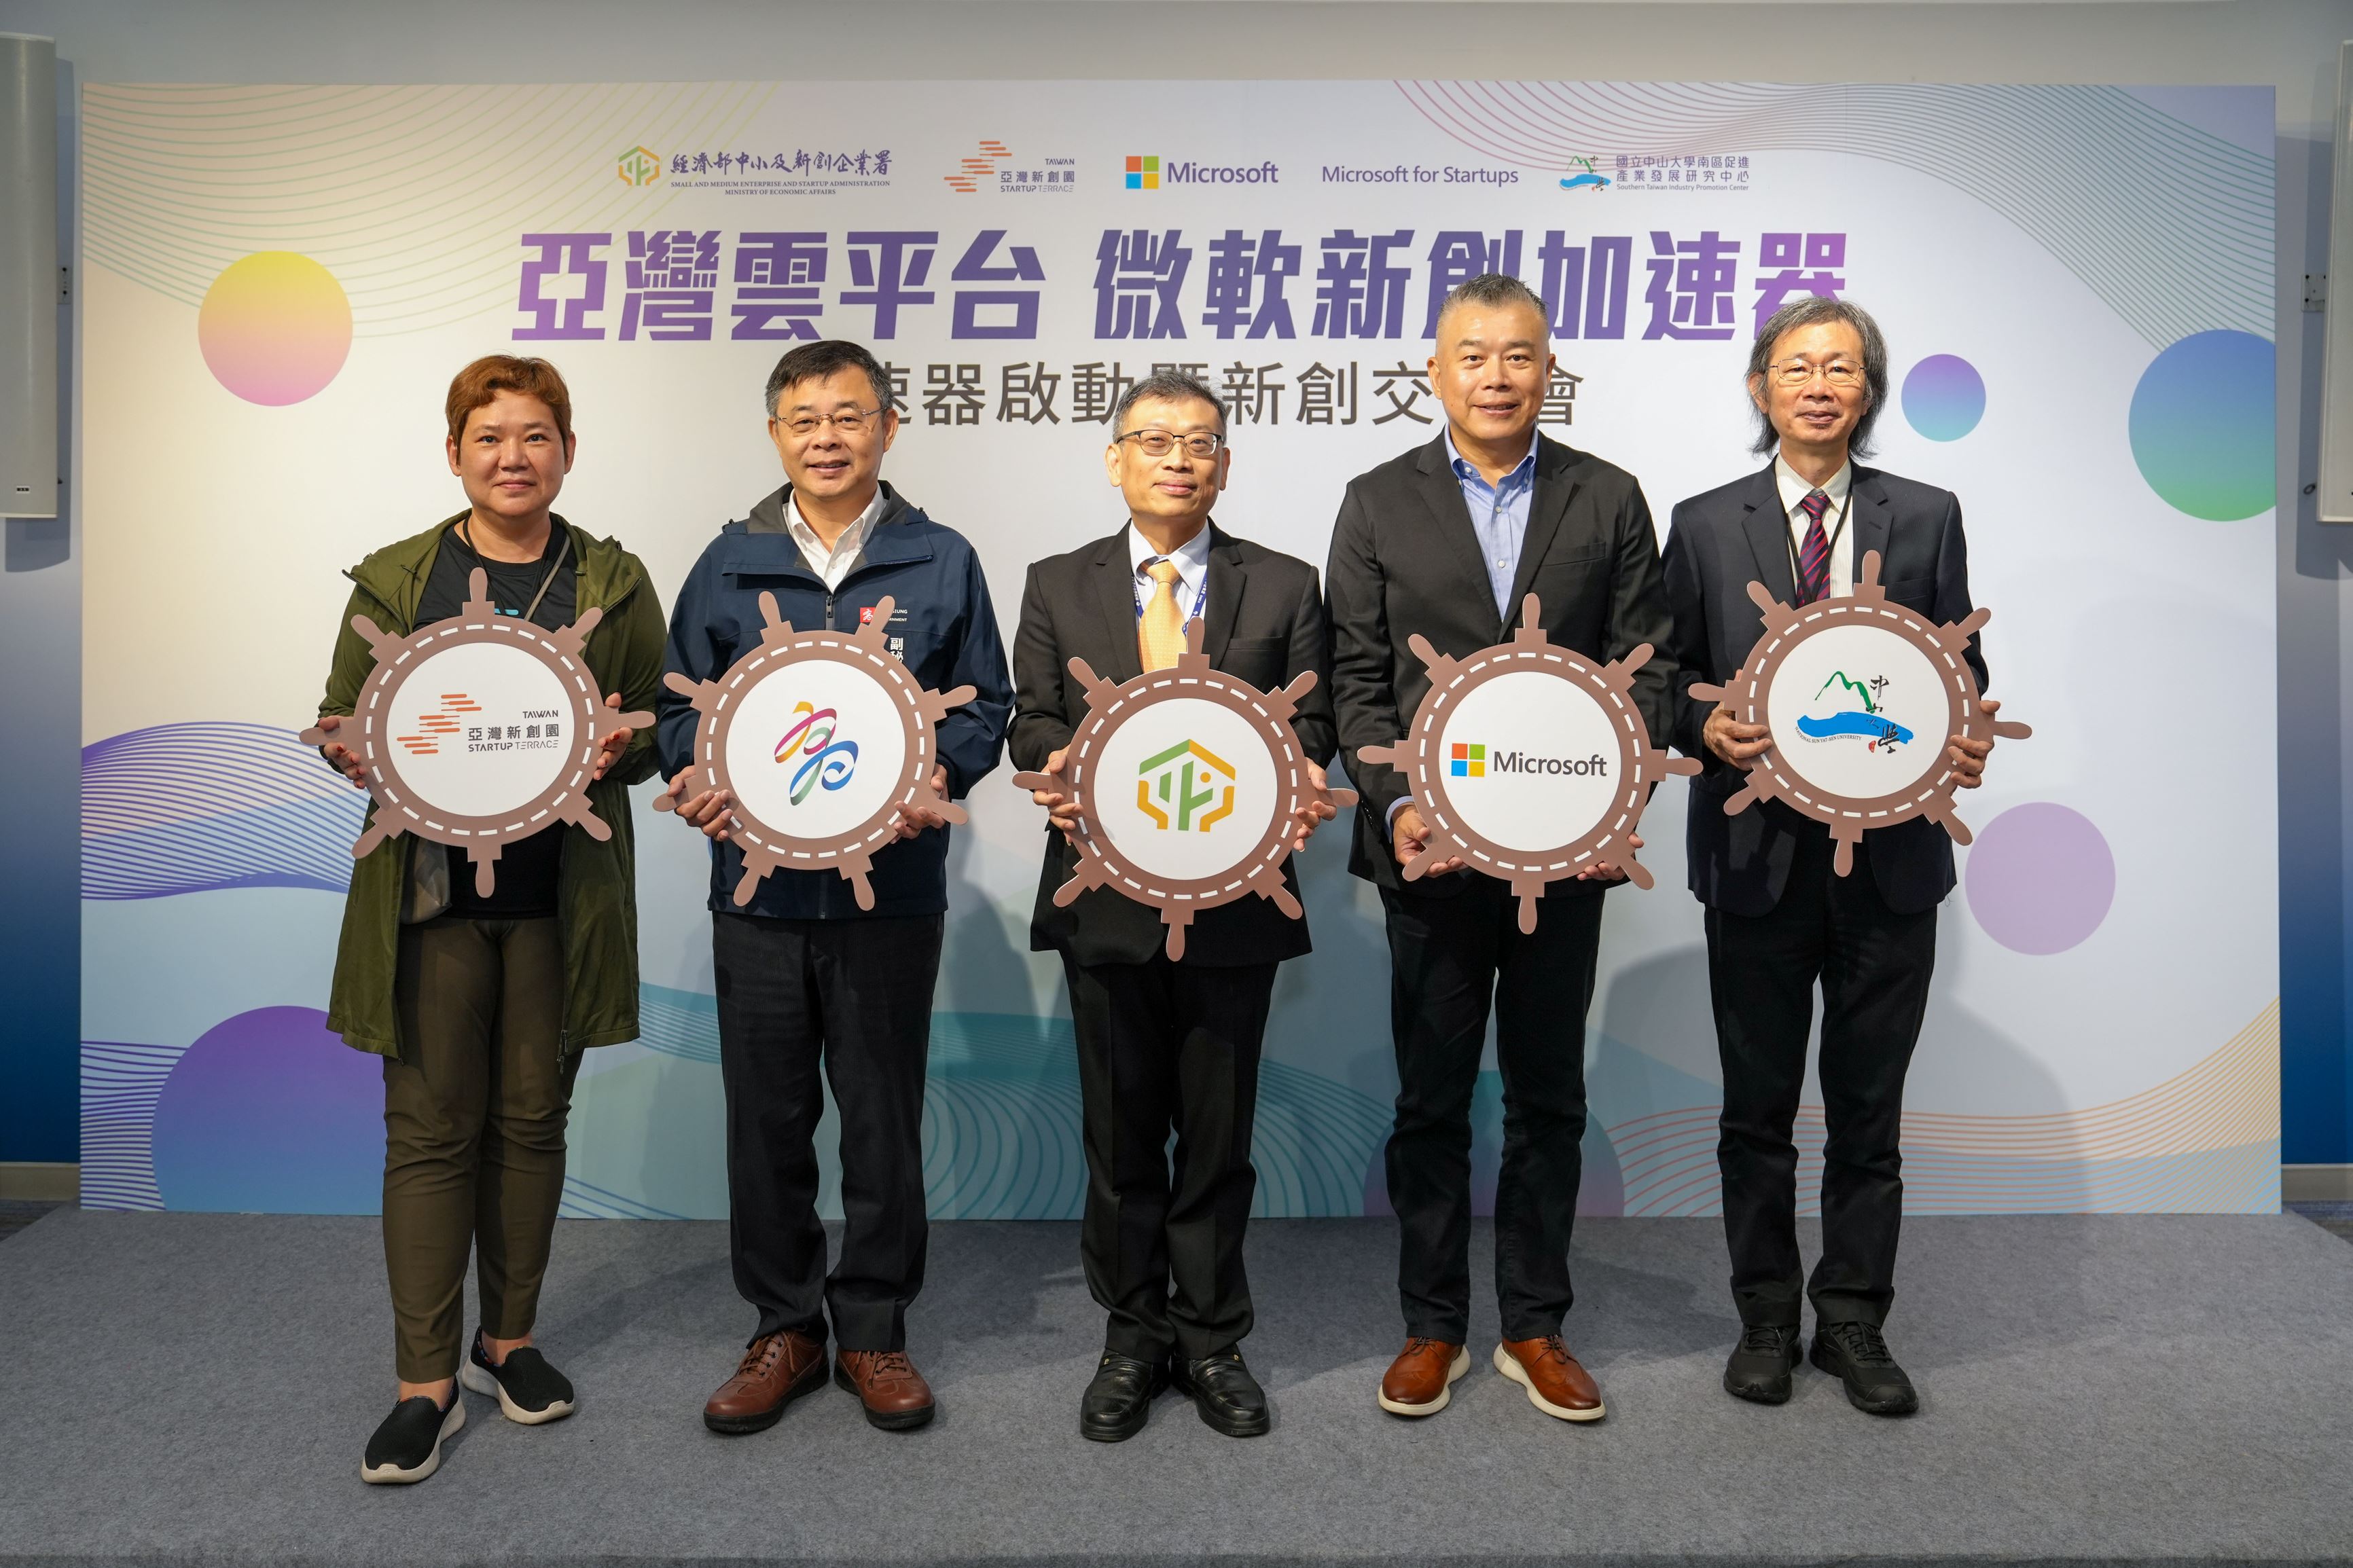 第三屆亞灣雲平台微軟新創加速器正式啟動  台灣微軟攜手產官學共促創新應用走向國際  以智慧應用連結產業需求，加速 AI 技術落地